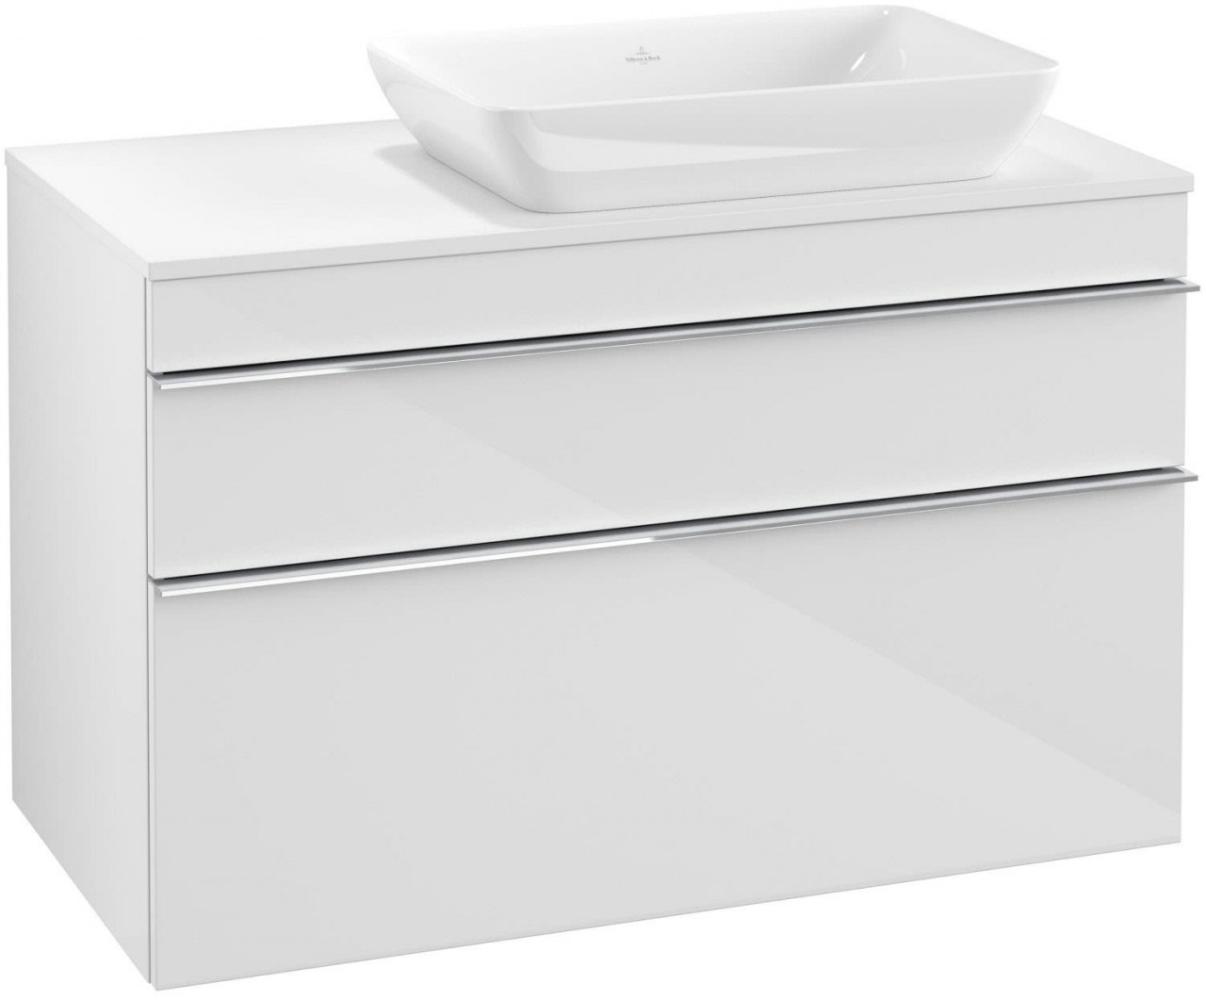 Villeroy & Boch VENTICELLO Waschtischunterschrank 95 cm breit, Weiß, Griff Chrom, für Becken rechts Bild 1